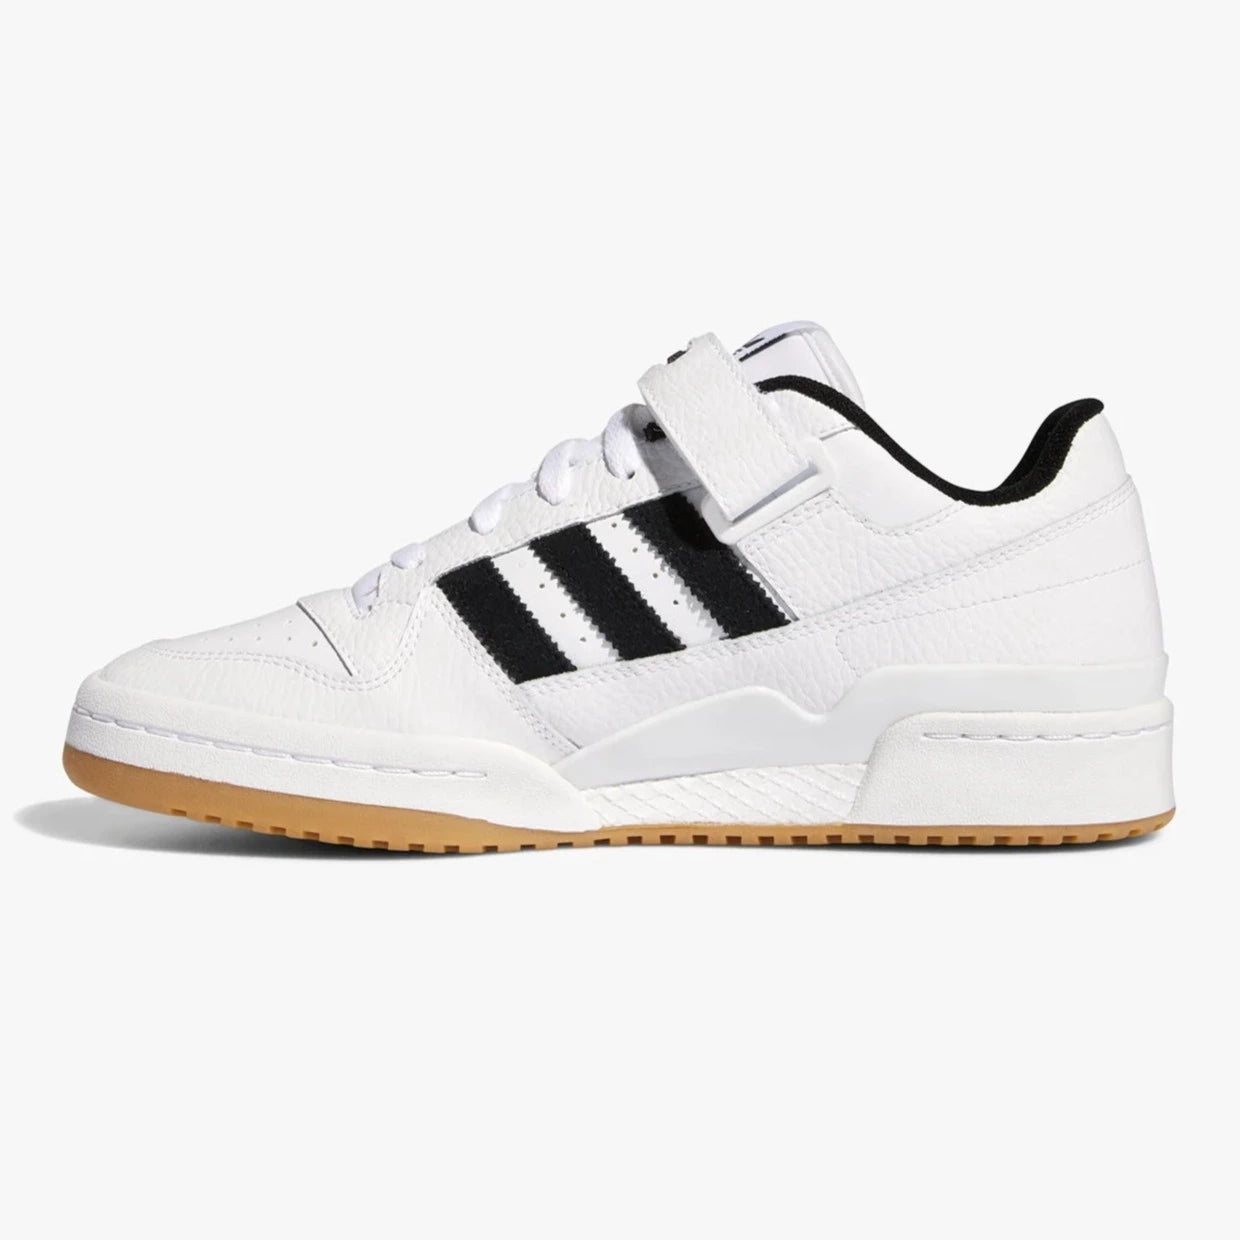 Adidas Forum 84 Low " White Gum " - Plumas Kicks